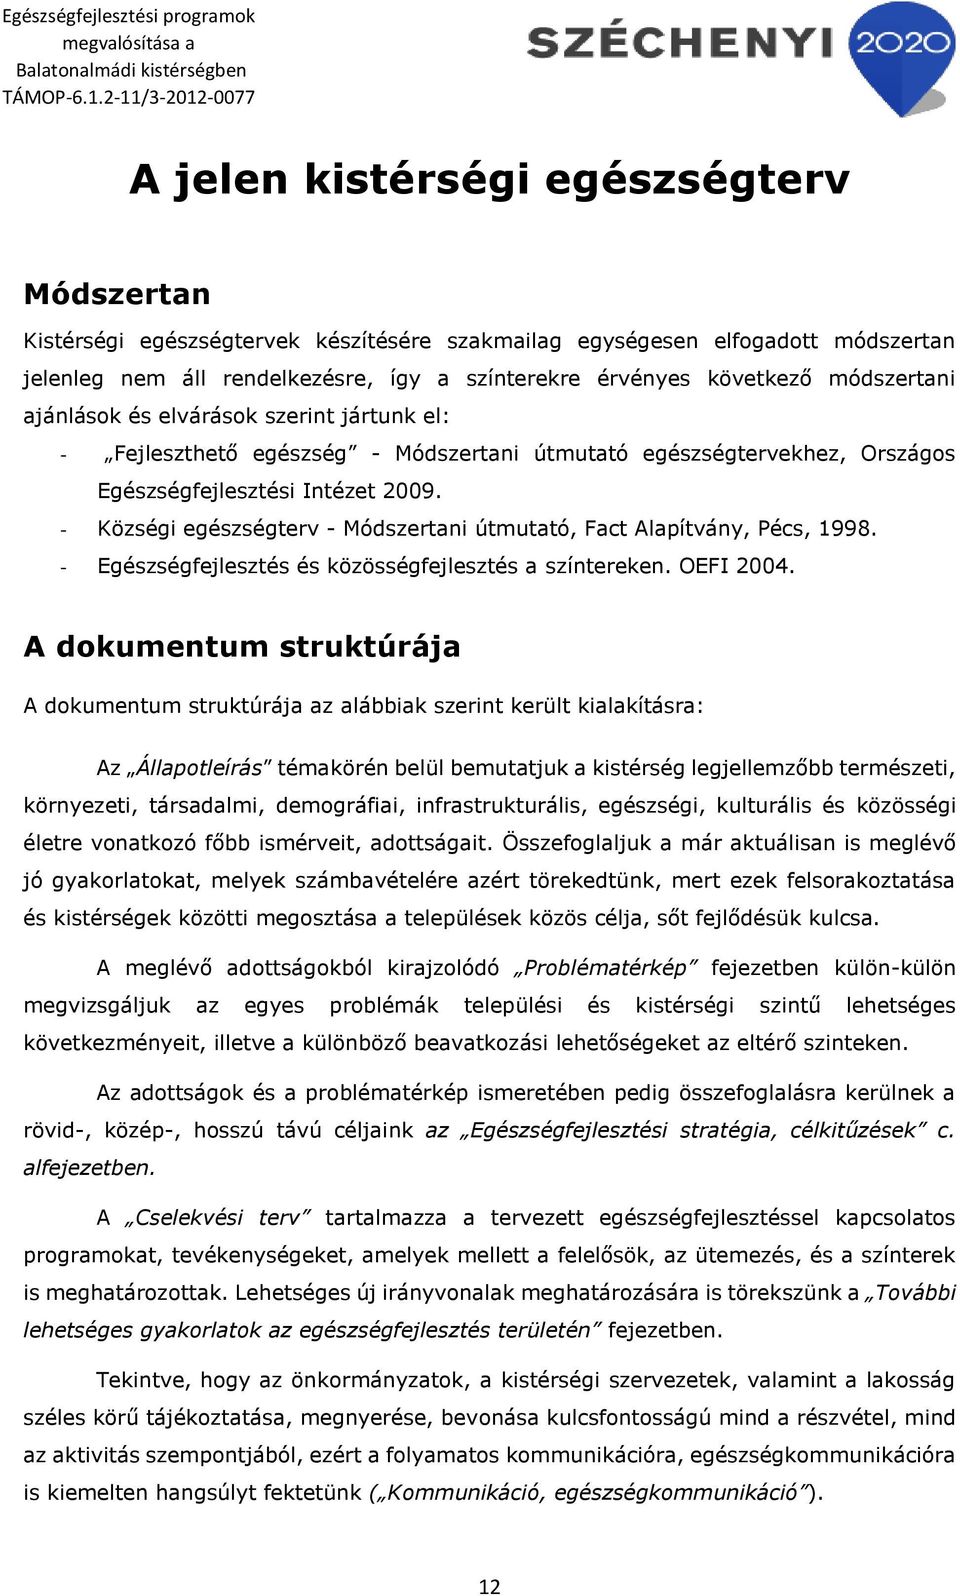 - Községi egészségterv - Módszertani útmutató, Fact Alapítvány, Pécs, 1998. - Egészségfejlesztés és közösségfejlesztés a színtereken. OEFI 2004.